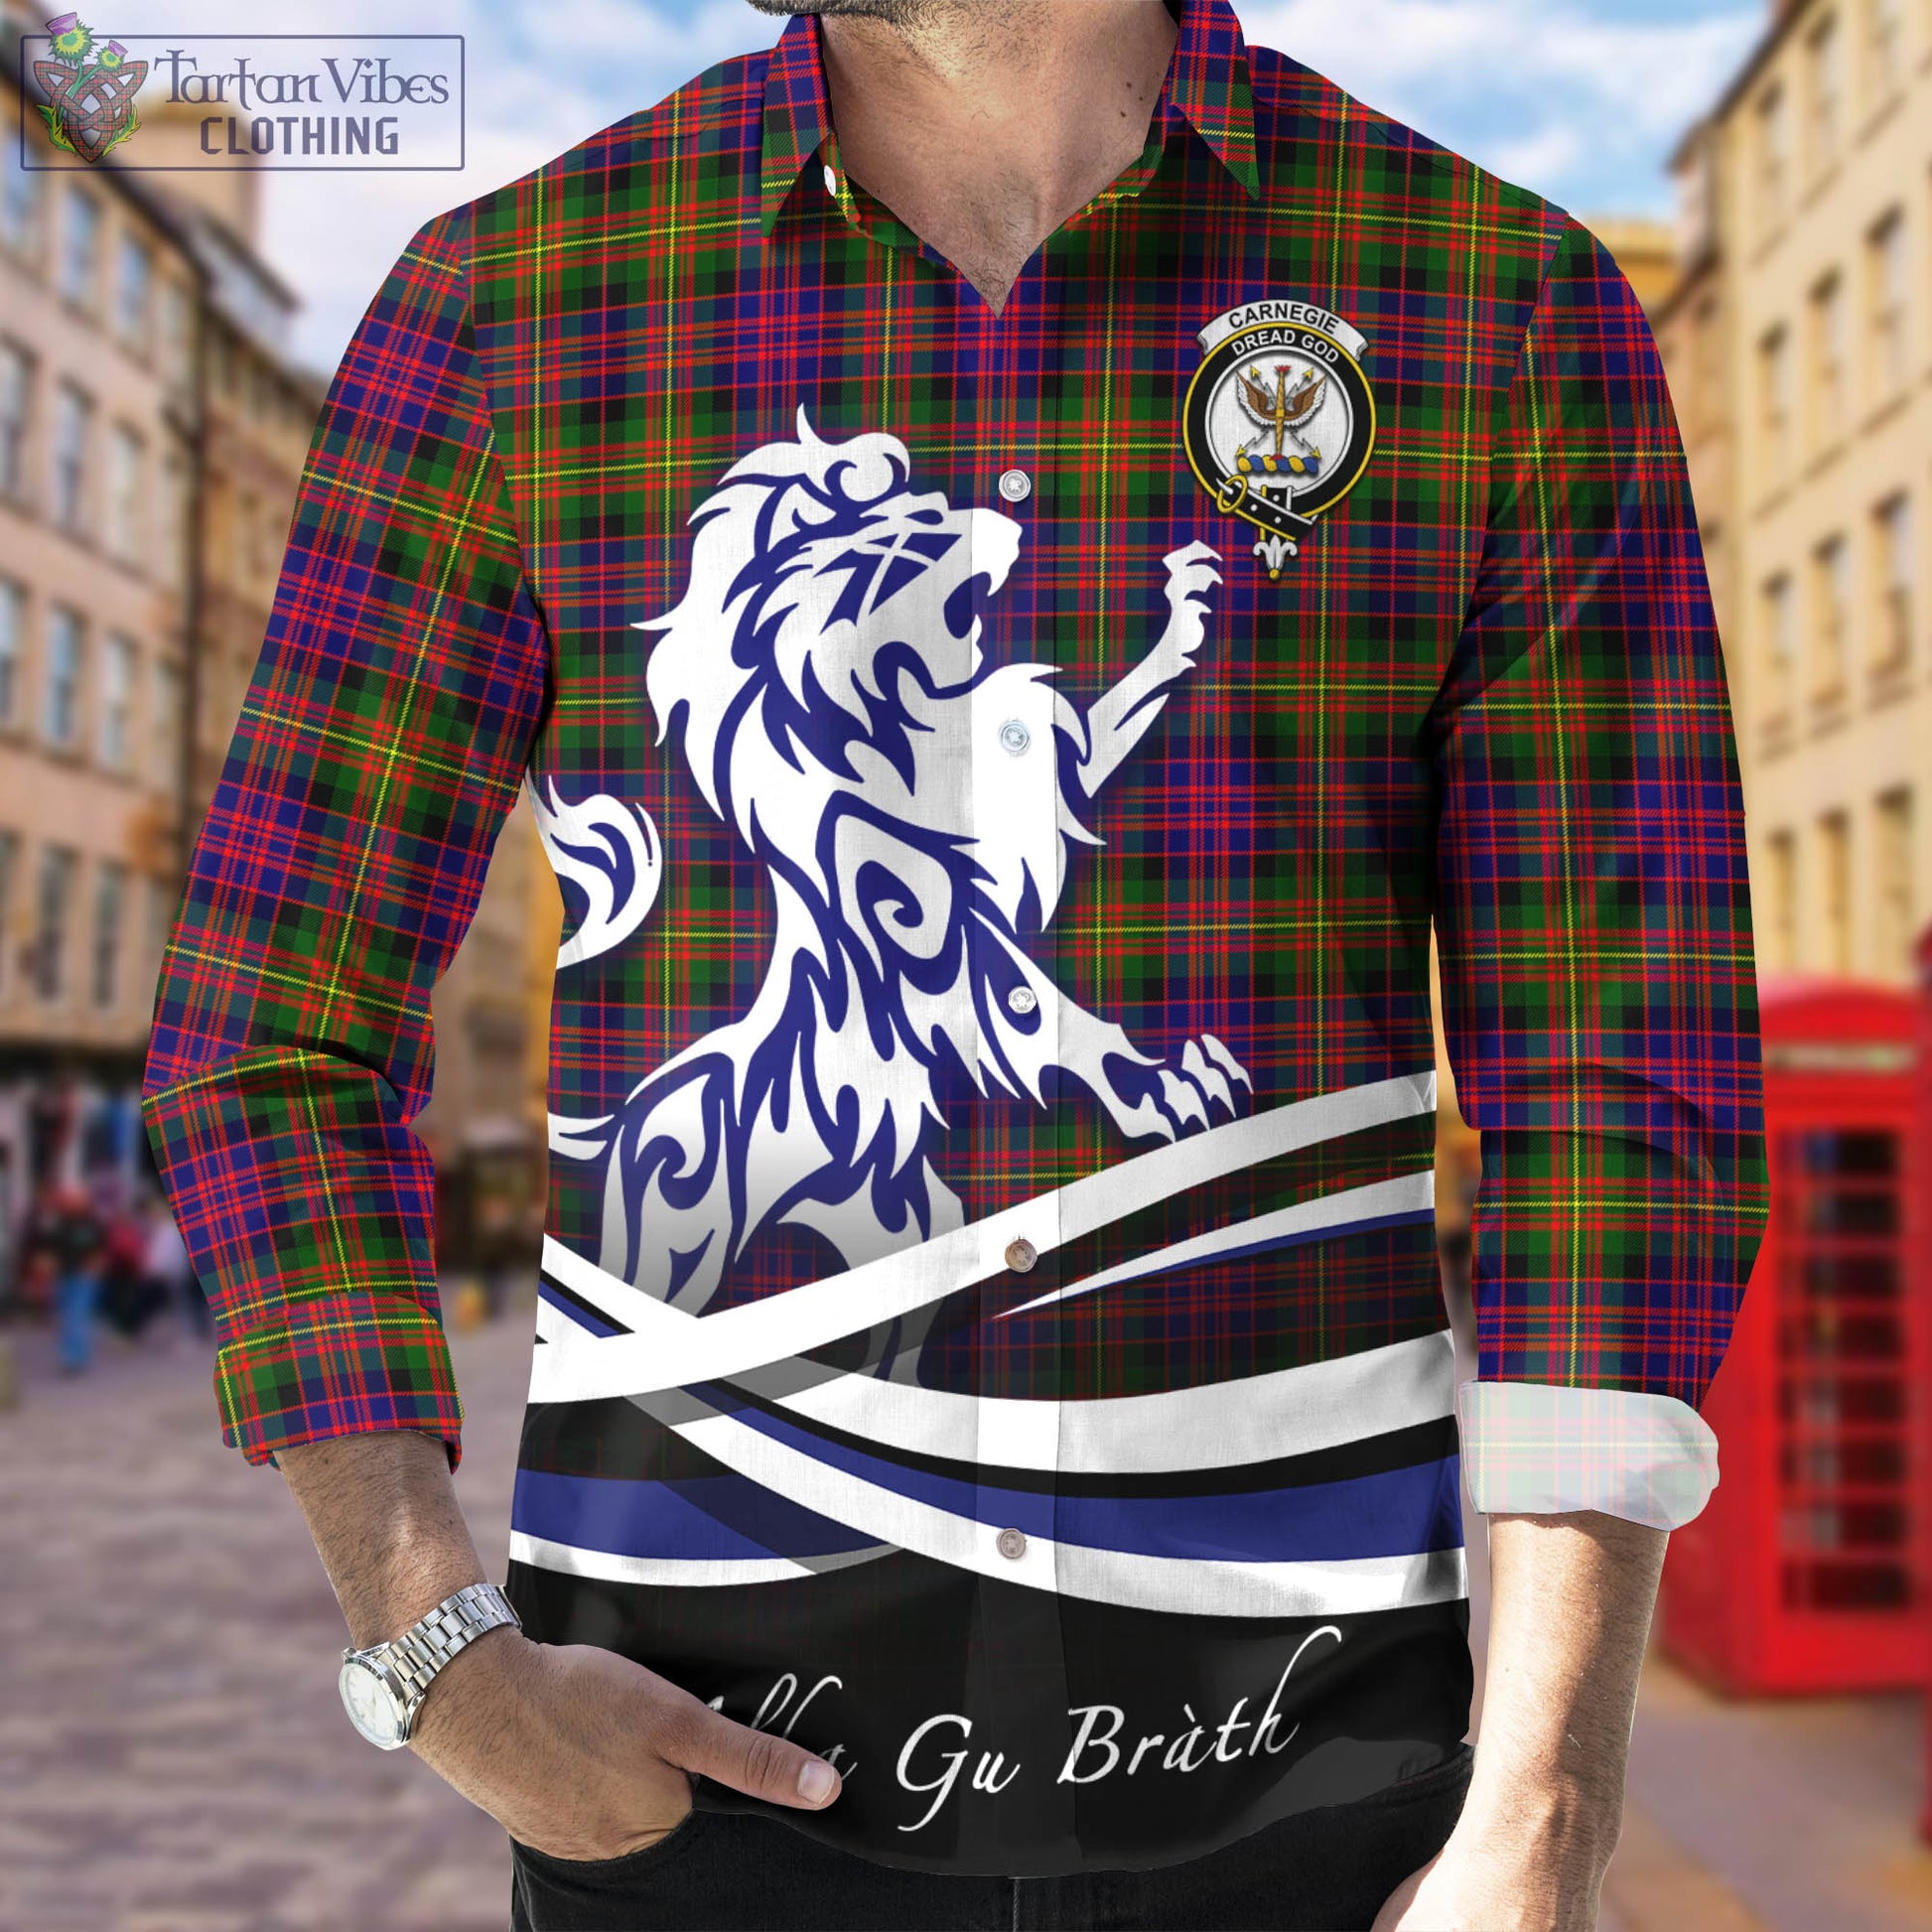 carnegie-modern-tartan-long-sleeve-button-up-shirt-with-alba-gu-brath-regal-lion-emblem